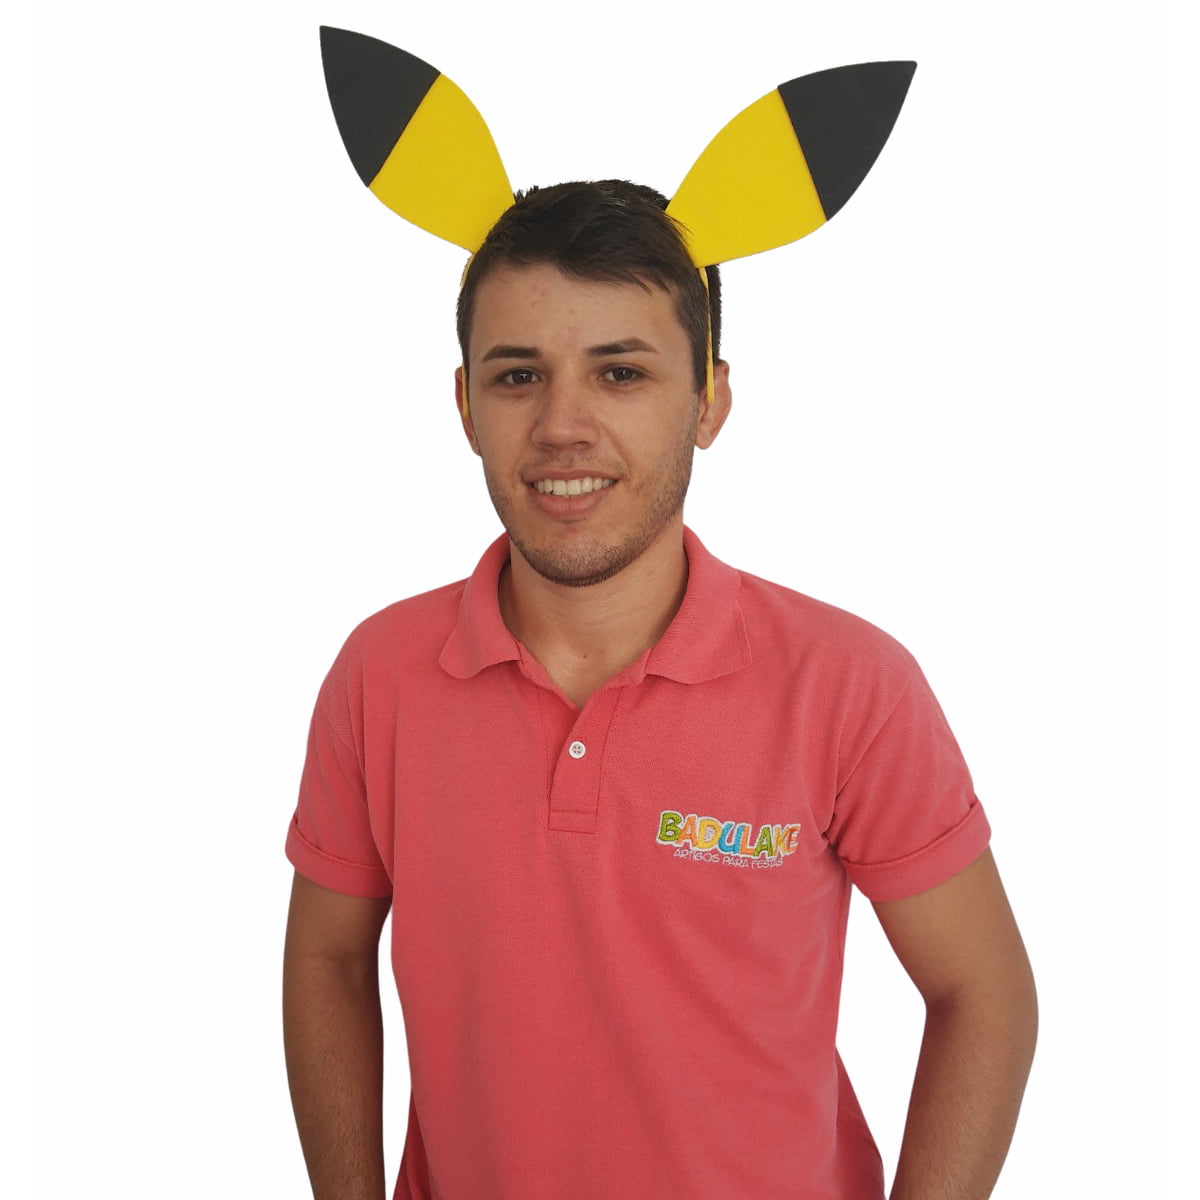 Tiara Pokemon Go Pikachu Fantasia Cosplay Carnaval